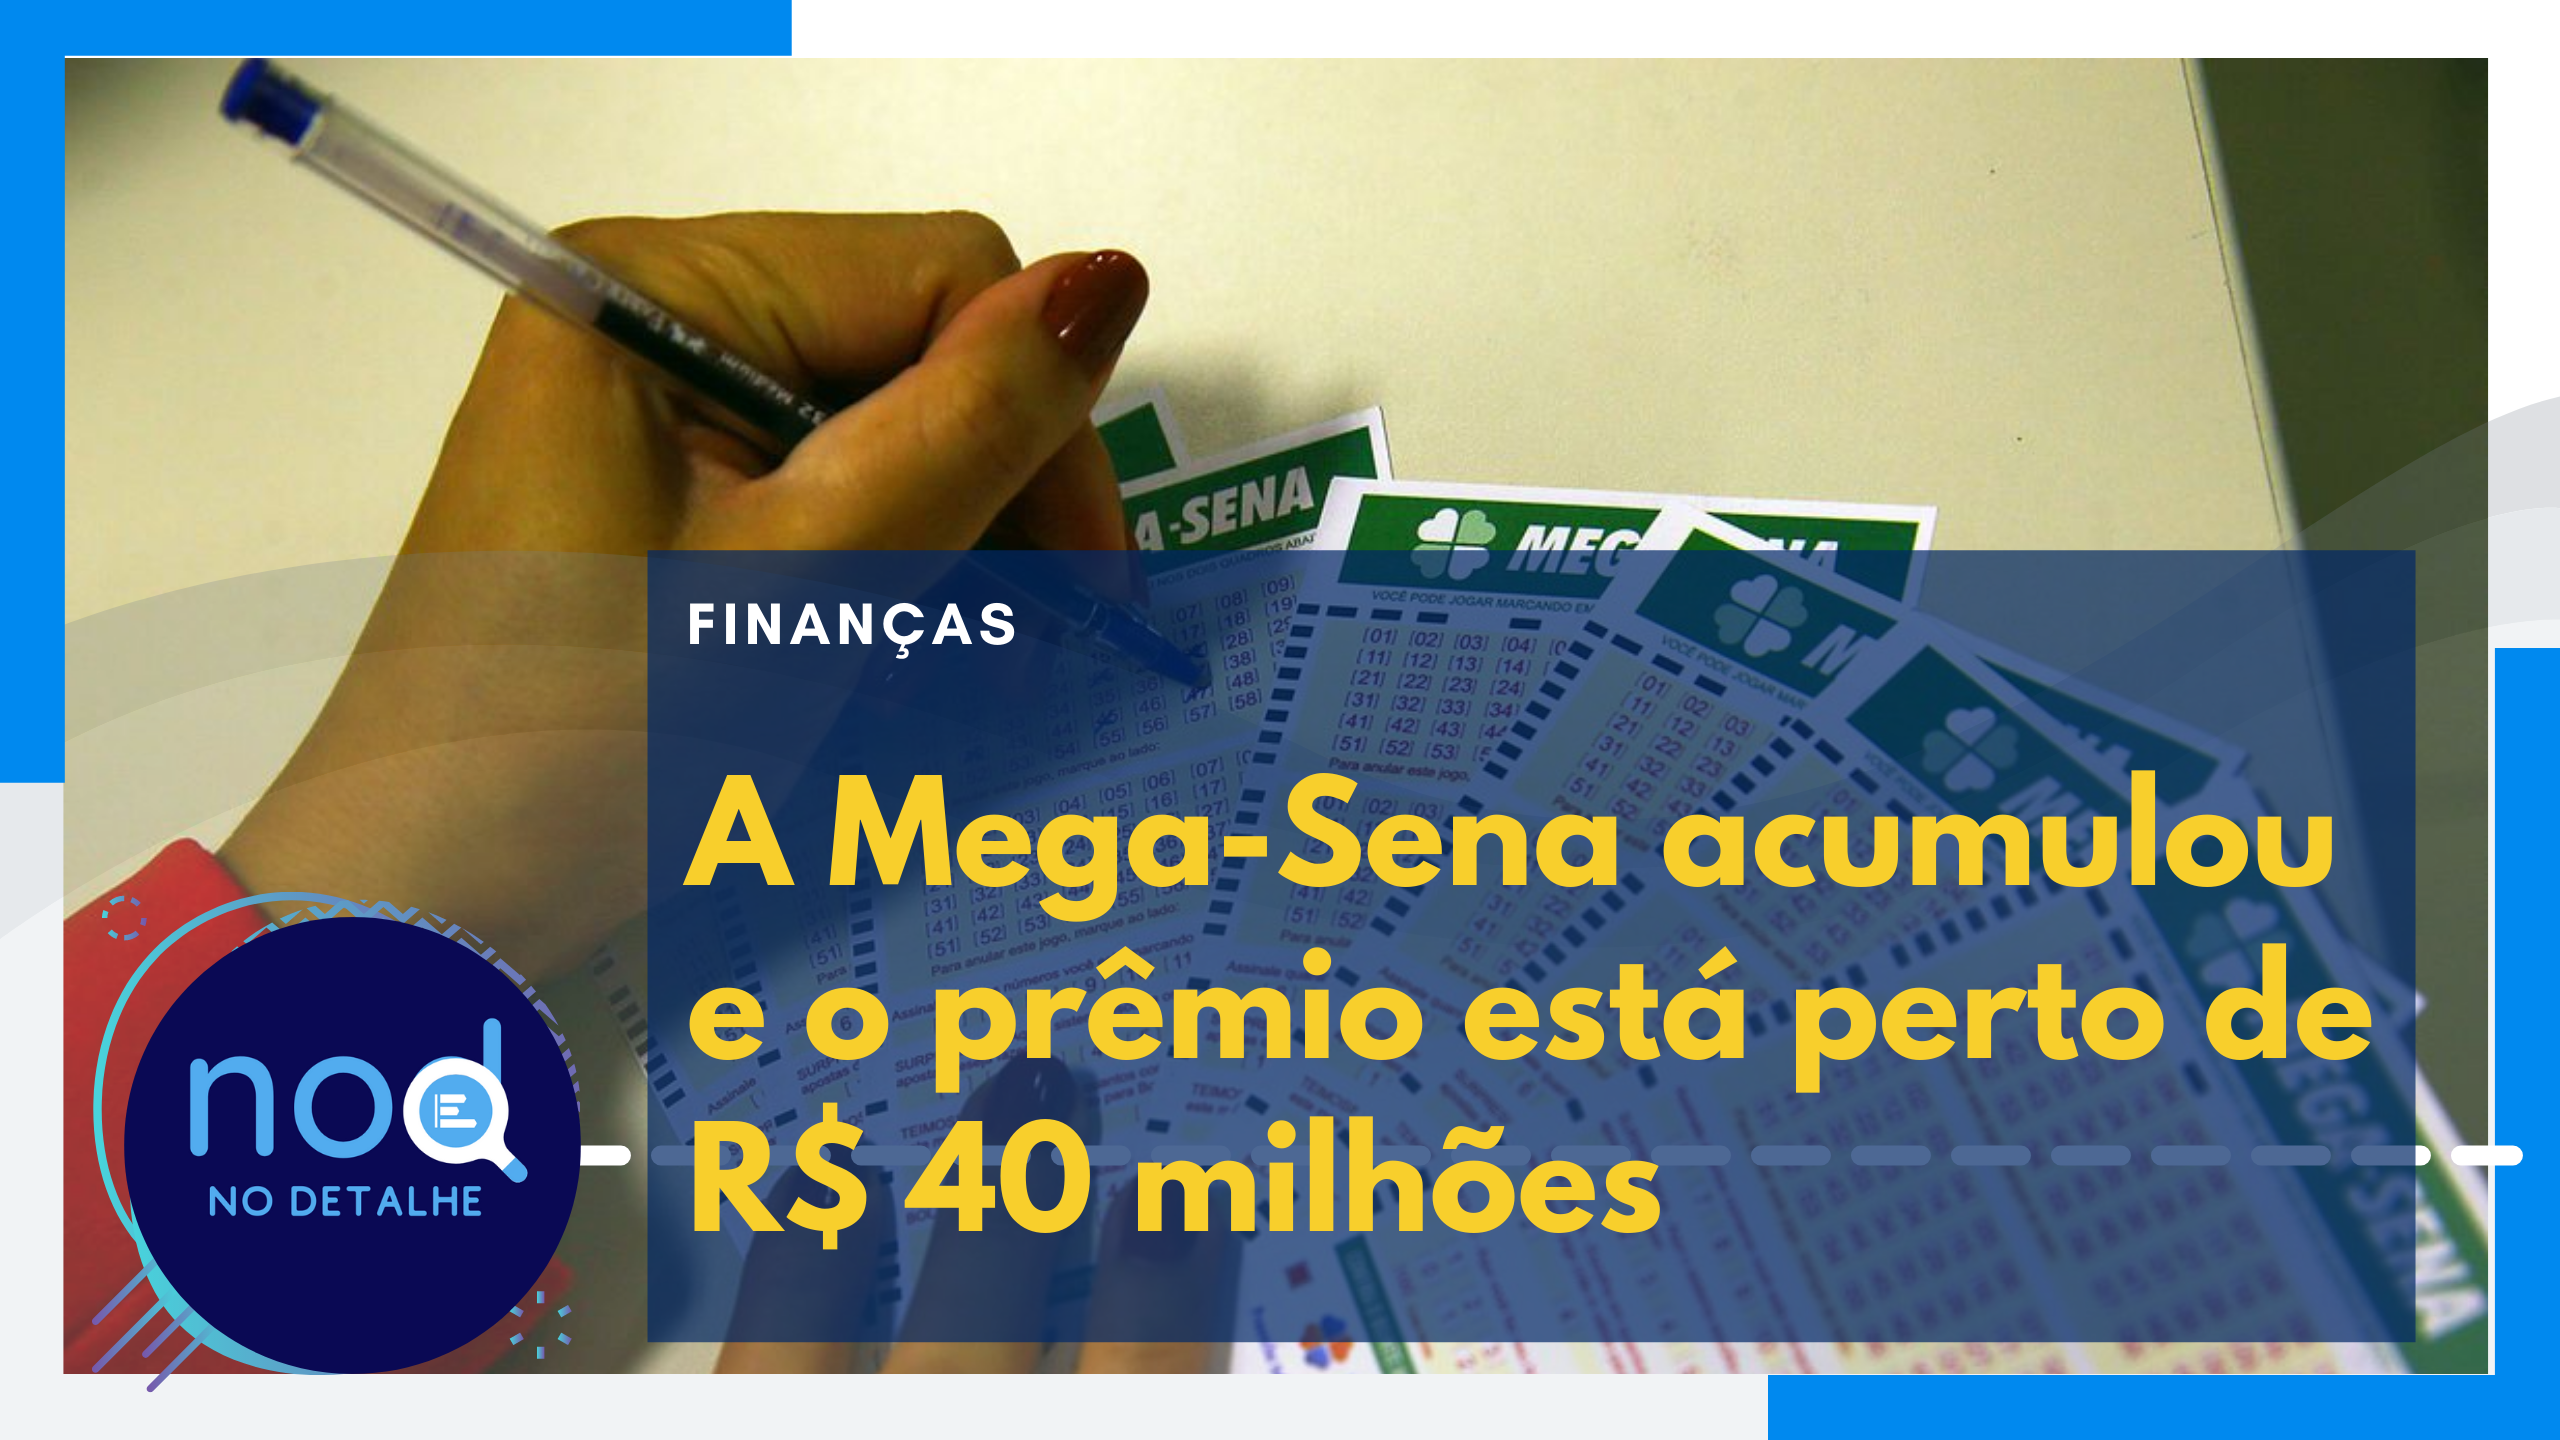 A Mega-Sena acumulou e o prêmio está perto de R$ 40 milhões